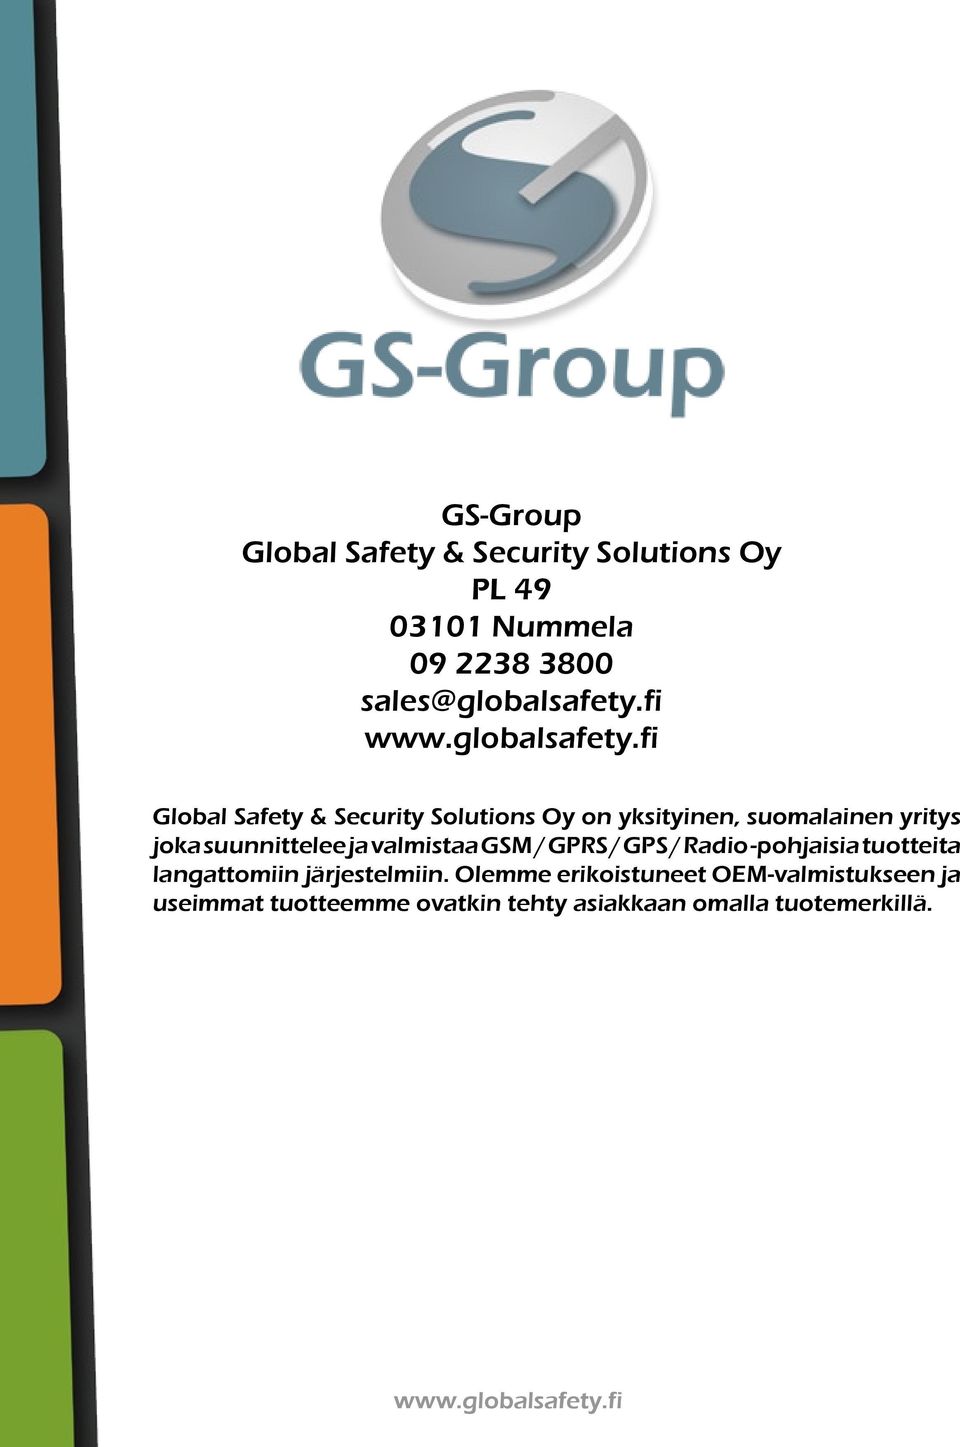 fi Global Safety & Security Solutions Oy on yksityinen, suomalainen yritys joka suunnittelee ja